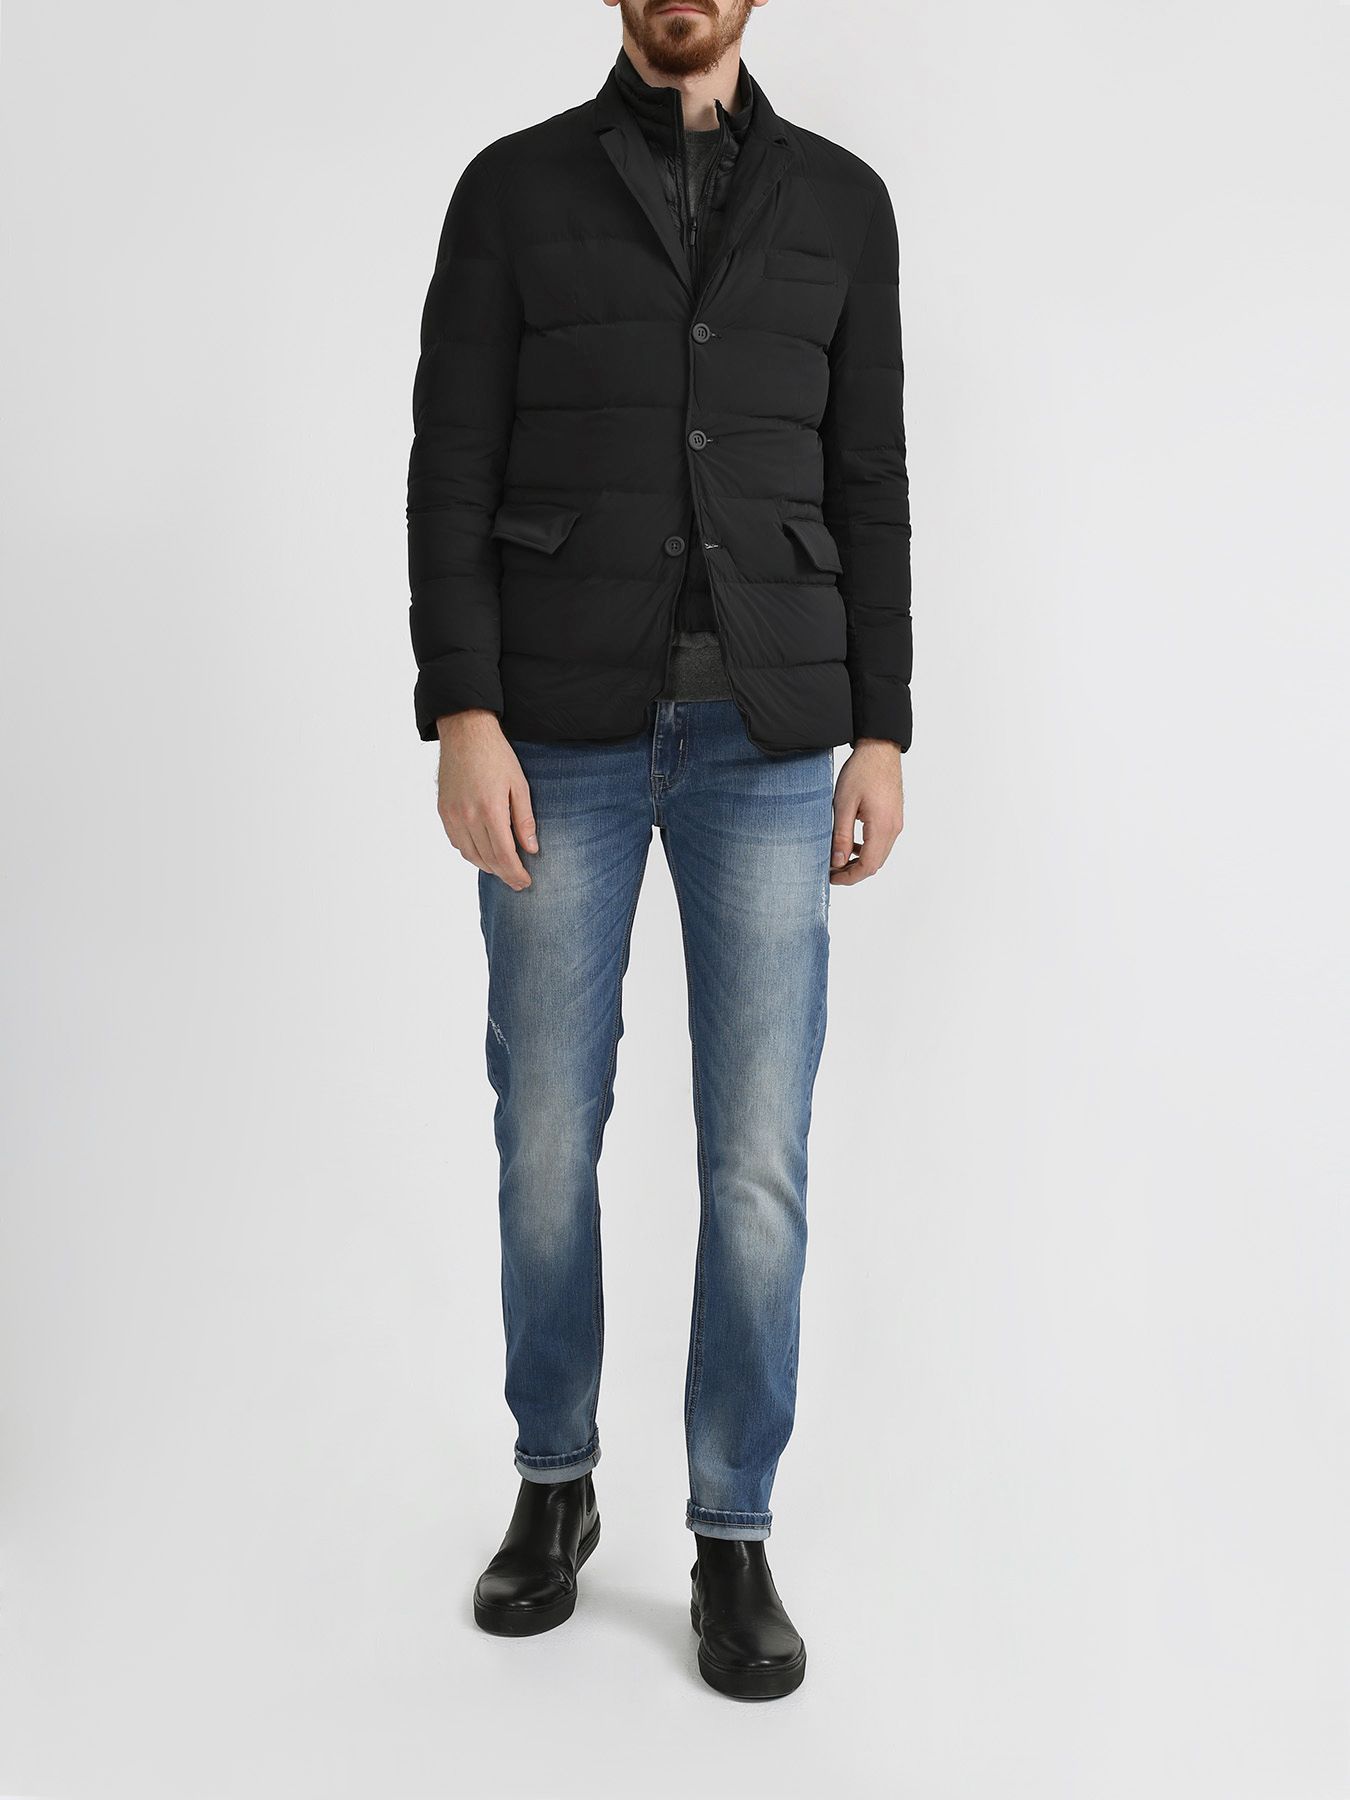 Alessandro Manzoni Jeans Куртка 316266-025